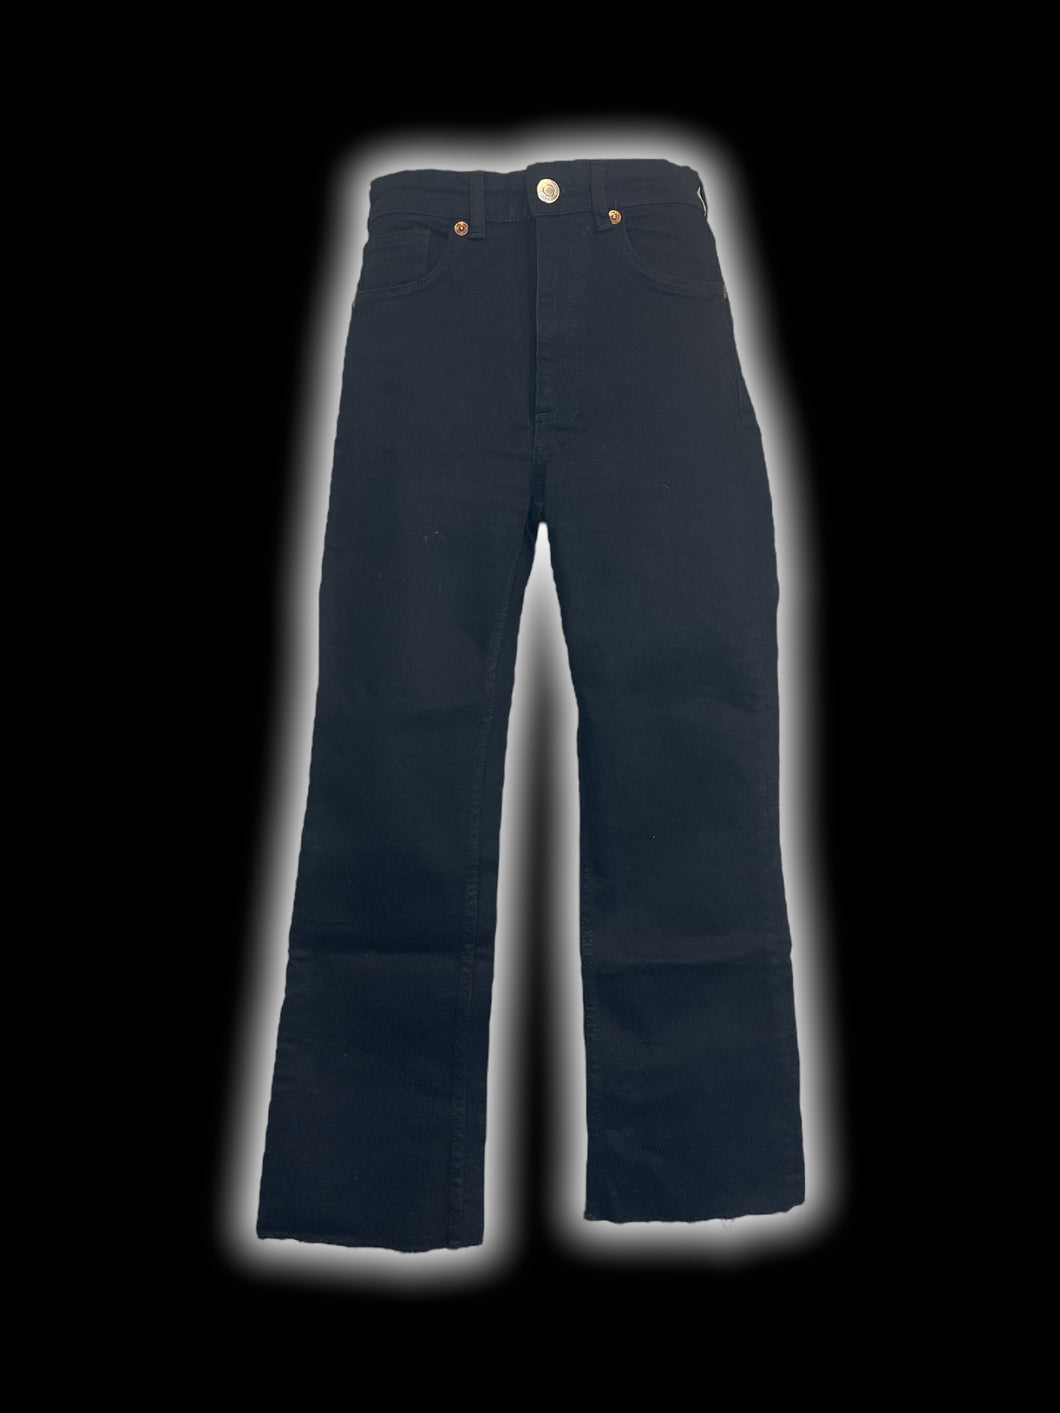 S Black denim high waisted pants w/ frayed hems, pockets, belt loops, & button/zipper closure